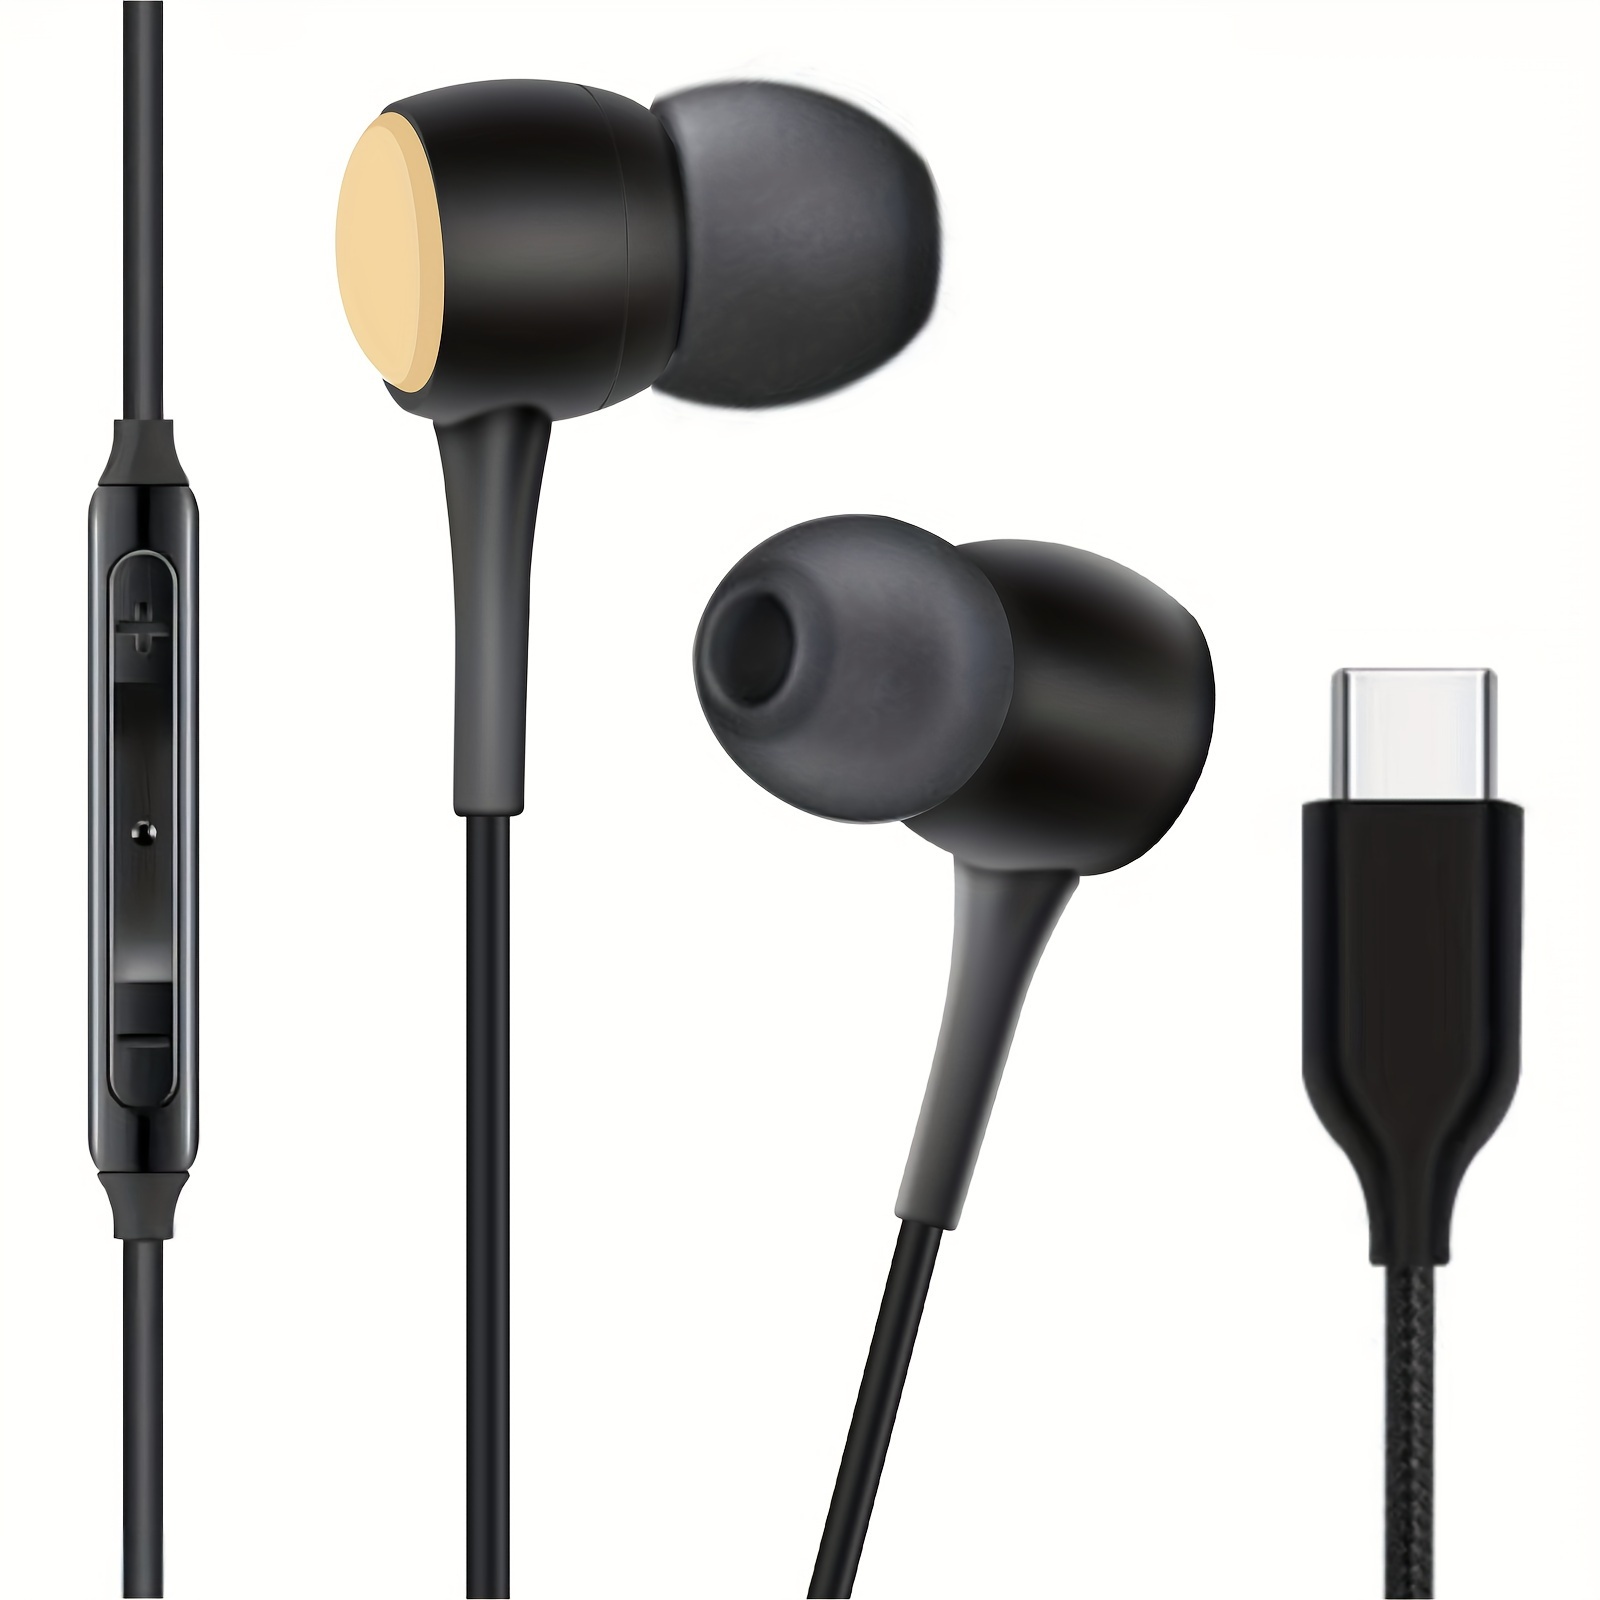 SAMSUNG AKG Tipo-C Auriculares con cable Auriculares de música en la oreja  Teléfono inteligente Samsung